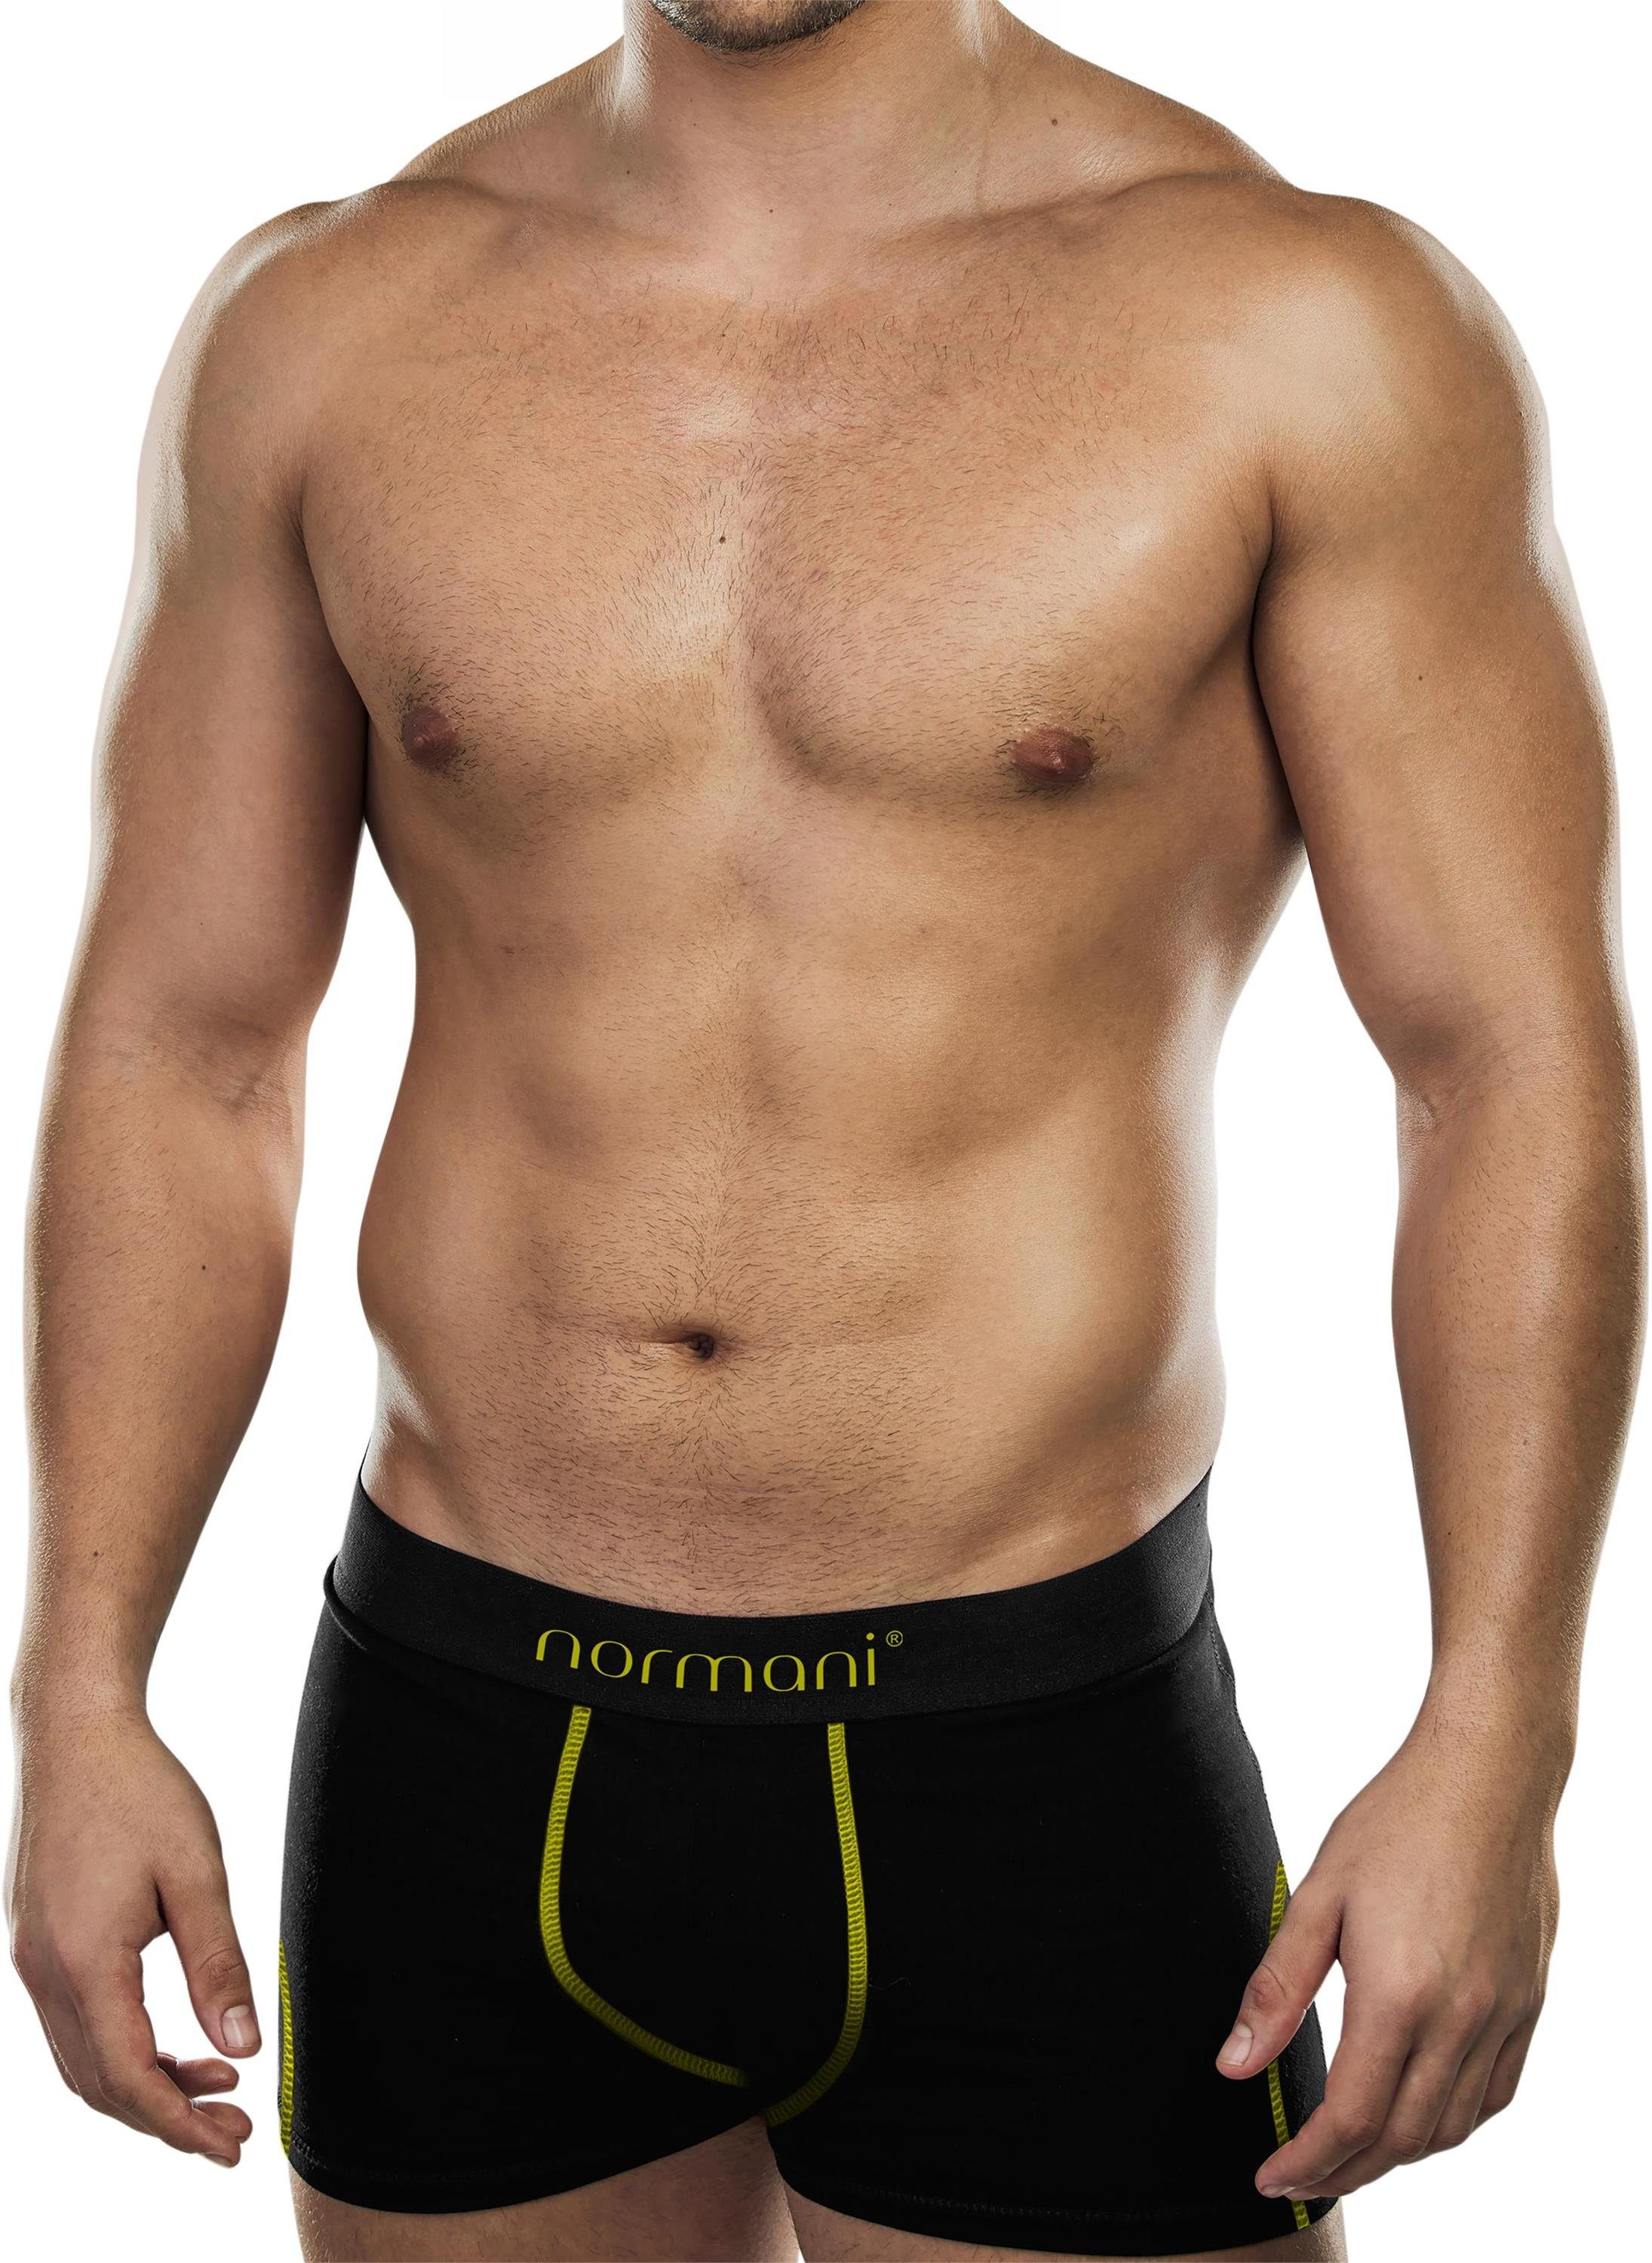 normani Boxershorts 6 weiche Boxershorts aus Baumwolle Unterhose aus atmungsaktiver Baumwolle für Männer Gelb